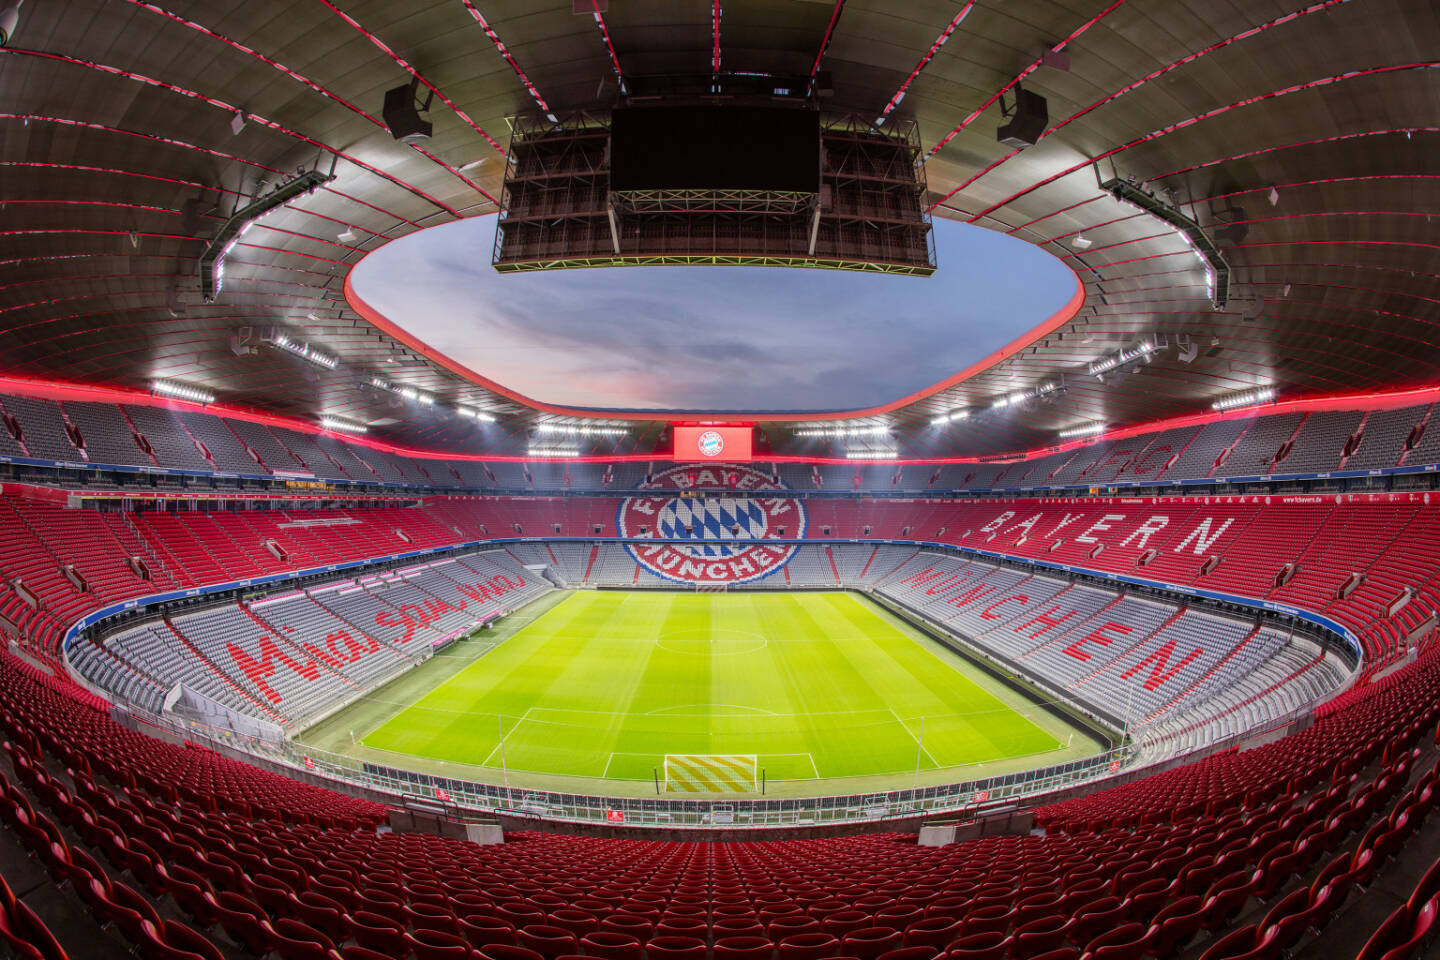 Zumtobel Group startet Lichtpartnerschaft mit dem FC Bayern München: Visualisierung der geplanten Effektbeleuchtung im inneren Dachbereich der Allianz Arena in München, Credit: Zumtobel